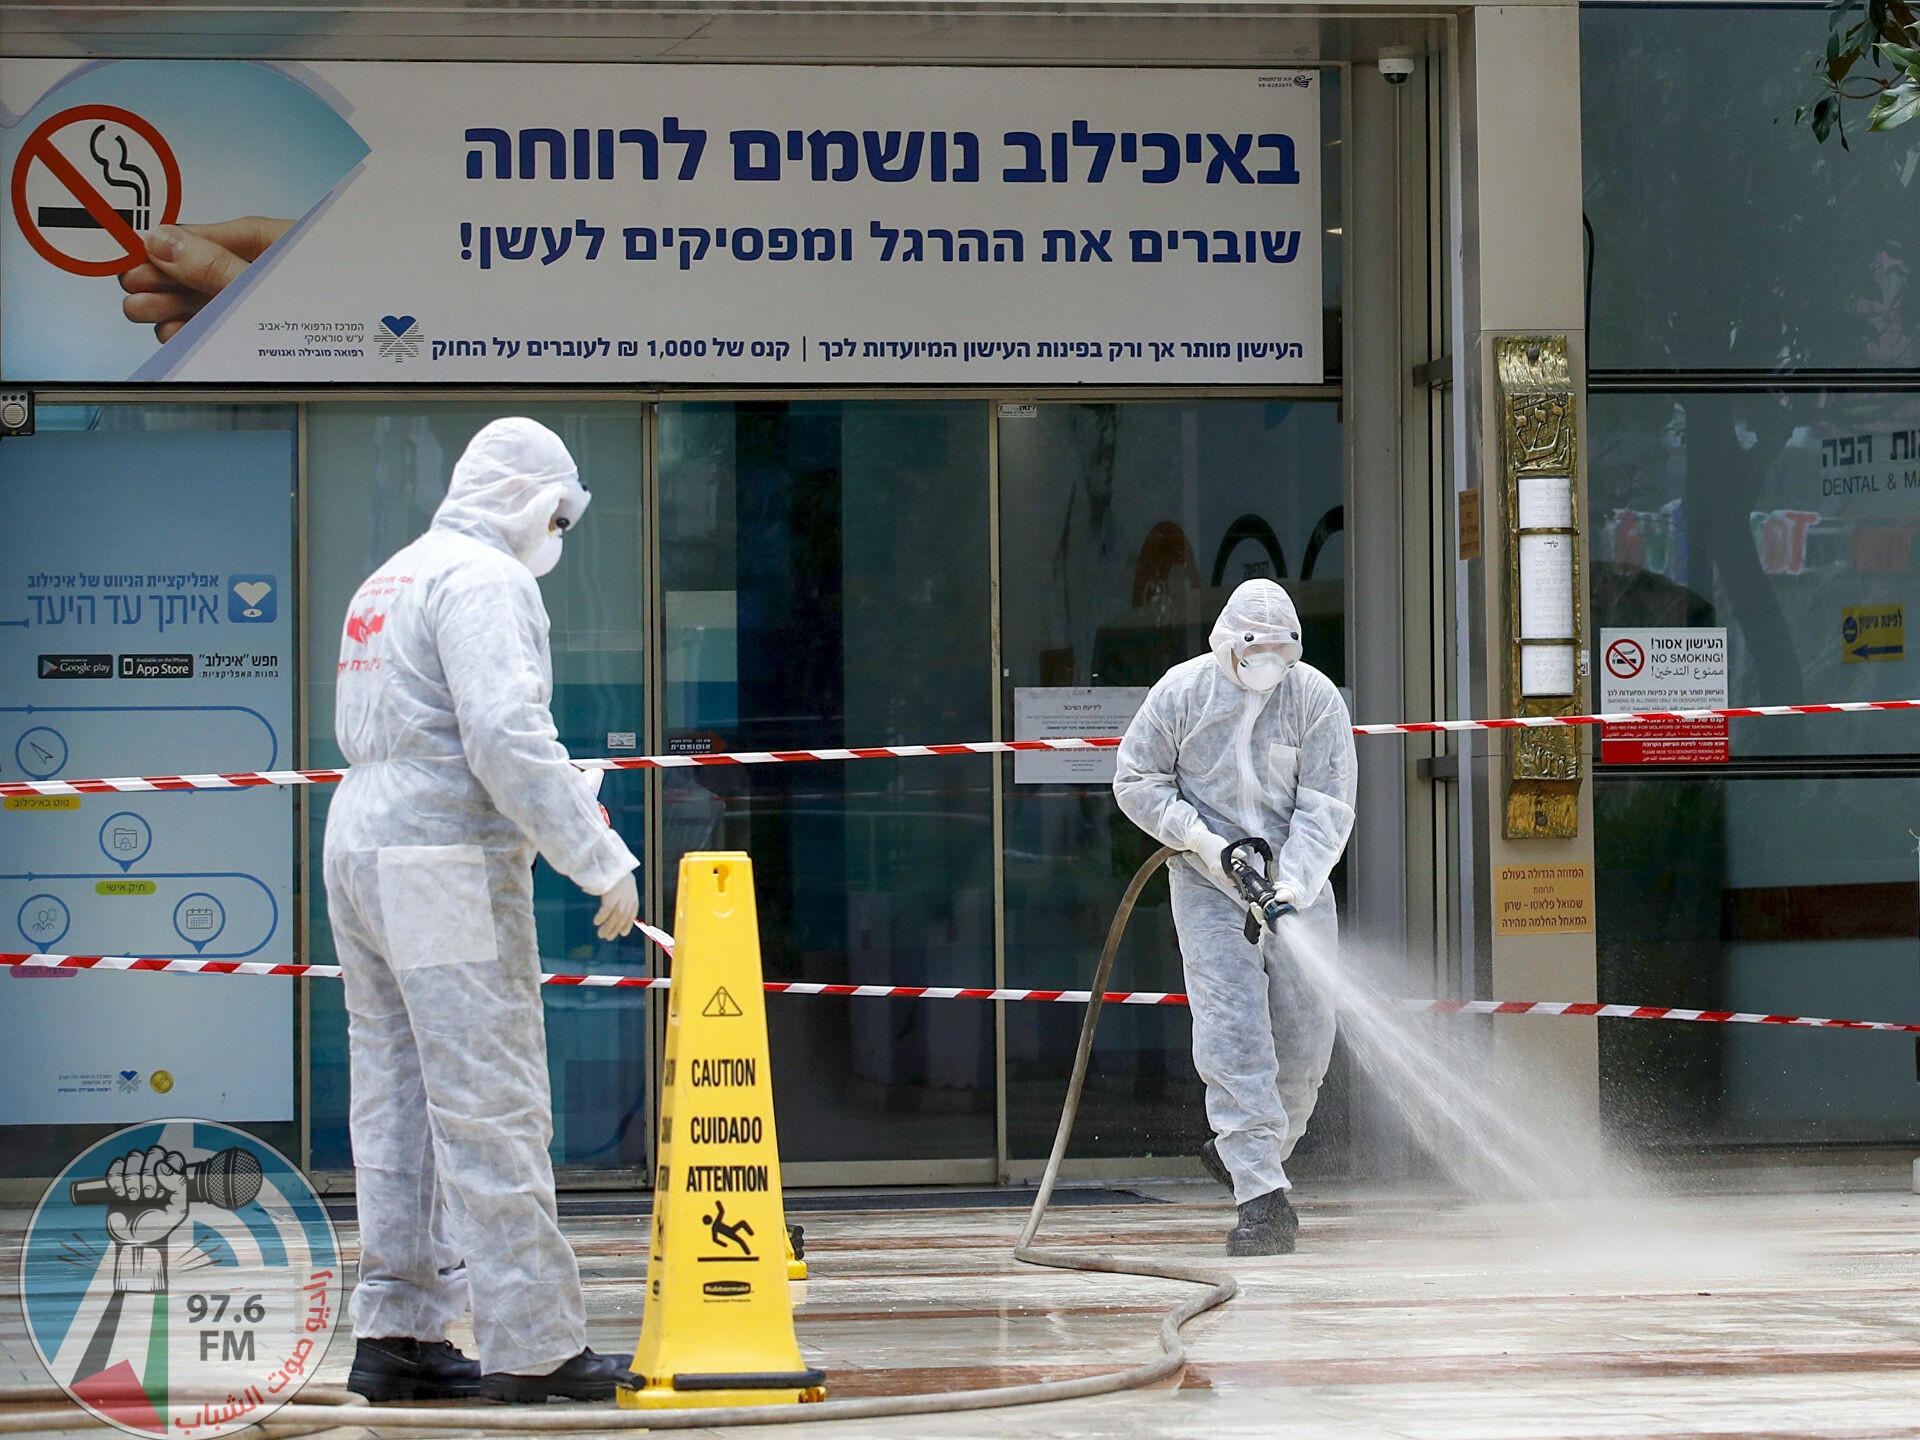 خبير صحي: إسرائيل تحتّل المرتبة الثانية عالمياً بعدد إصابات كورونا اليوميّة